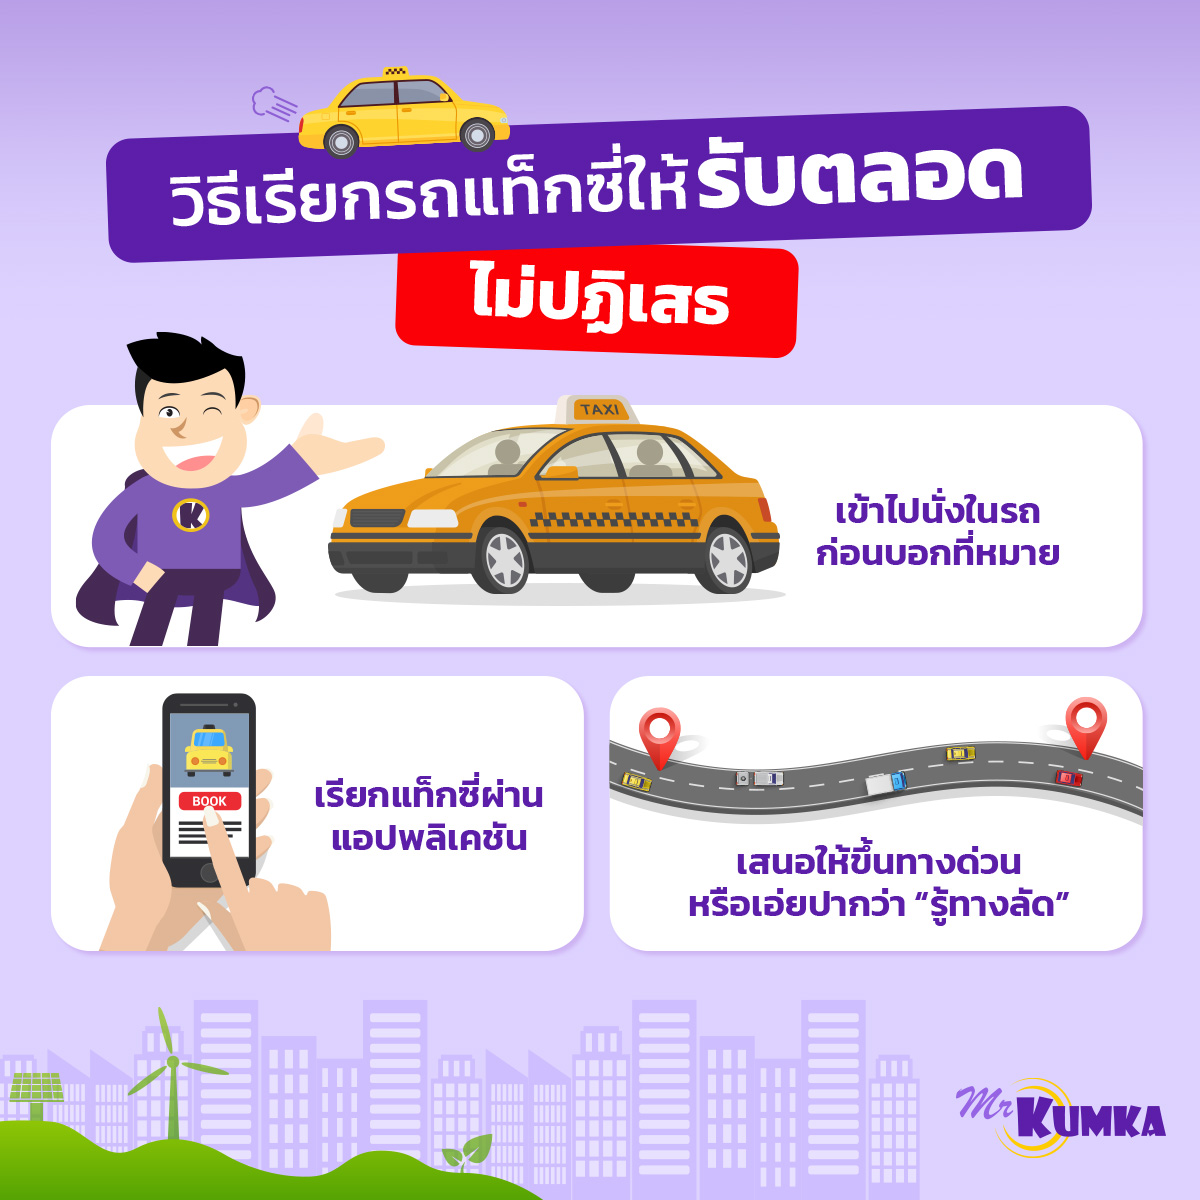 ข้อควรระวังเมื่อใช้บริการแท็กซี่ เพื่อความปลอดภัยและไม่โดนโกงค่าโดยสาร ที่ MrKumka.com